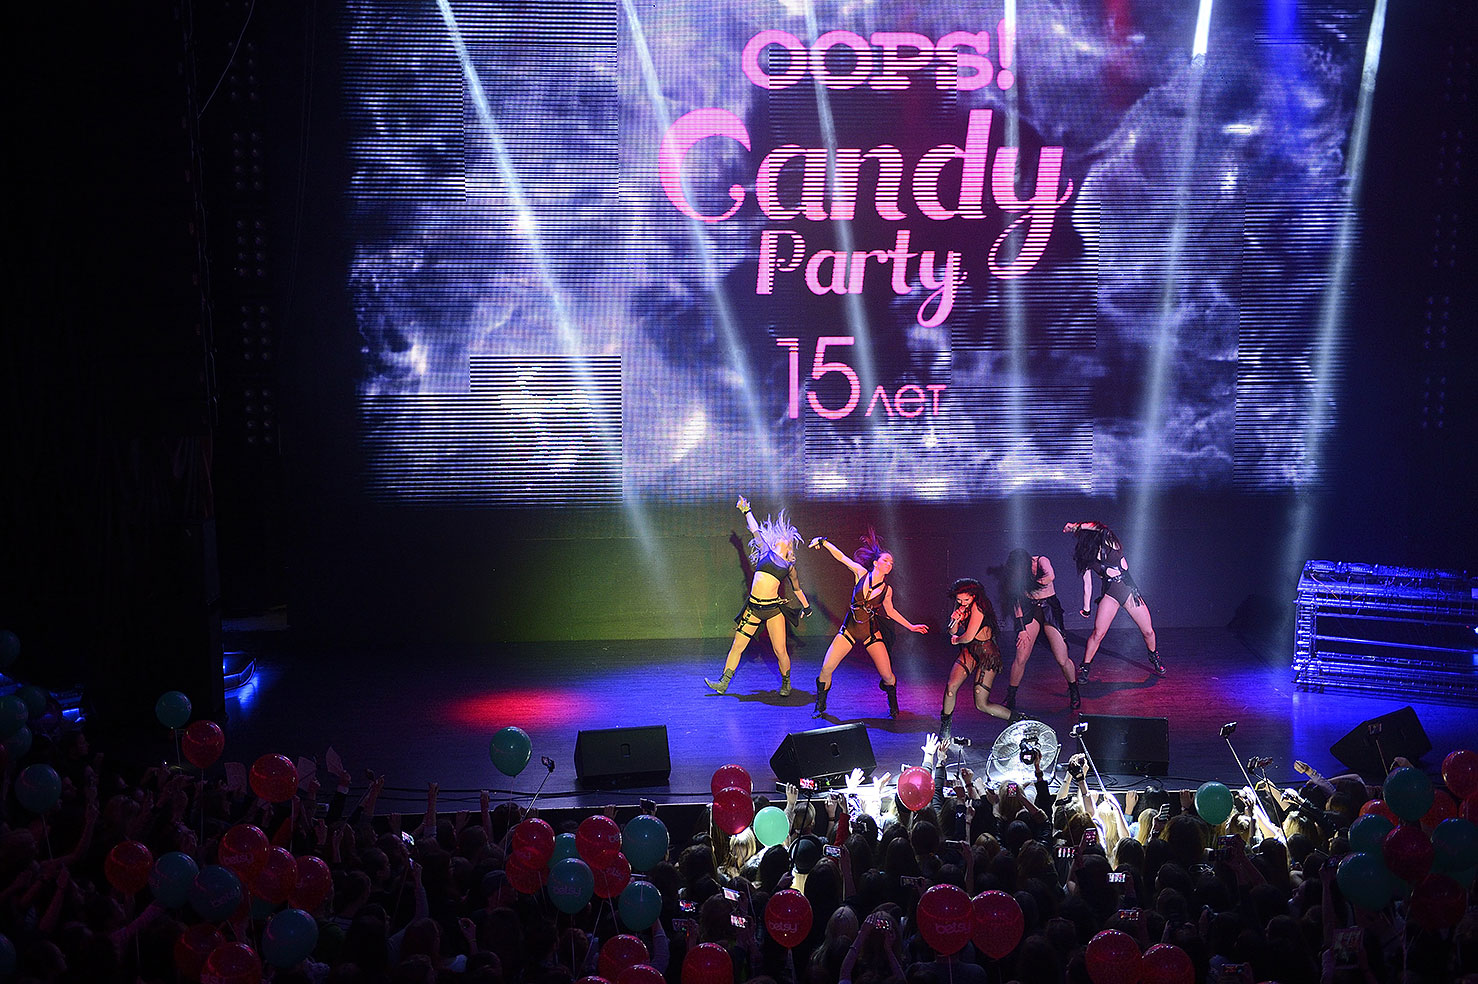 Самые яркие моменты вечеринки OOPS! Candy Party